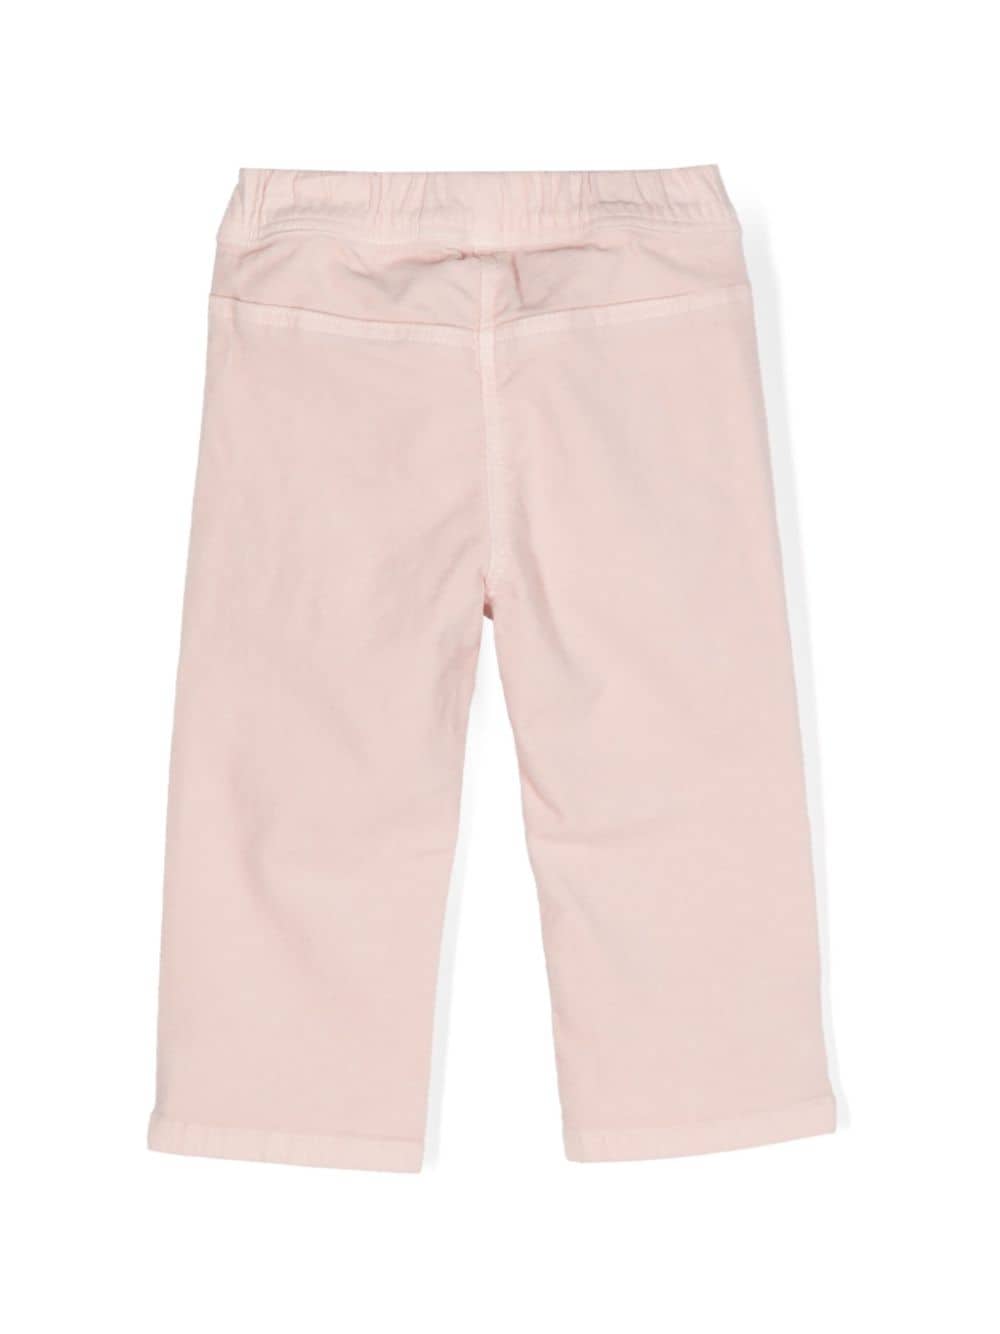 Pantalone per neonata in velluto rosa